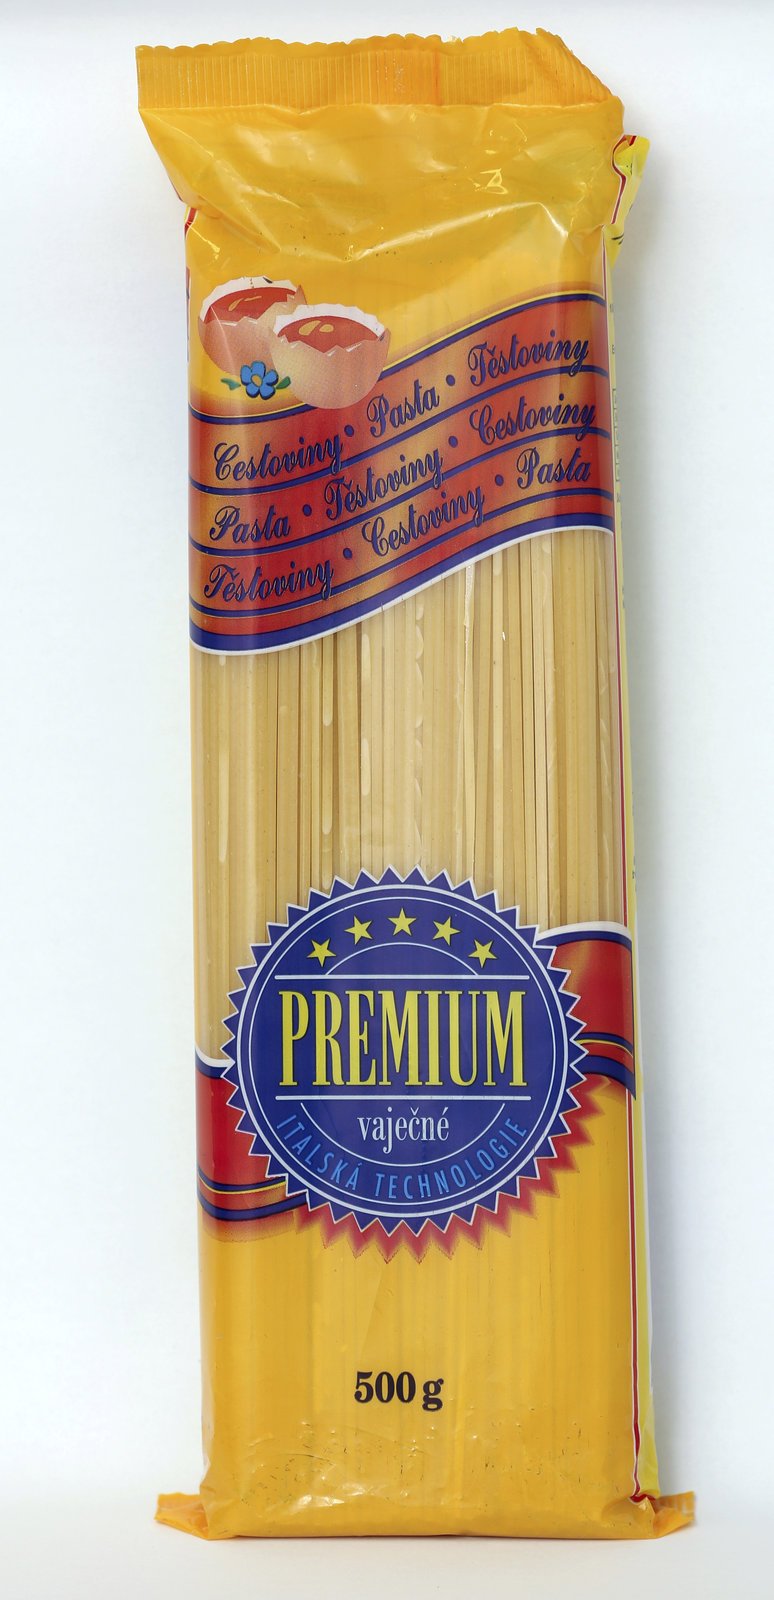 Poražený testu: Premium špagety vaječné